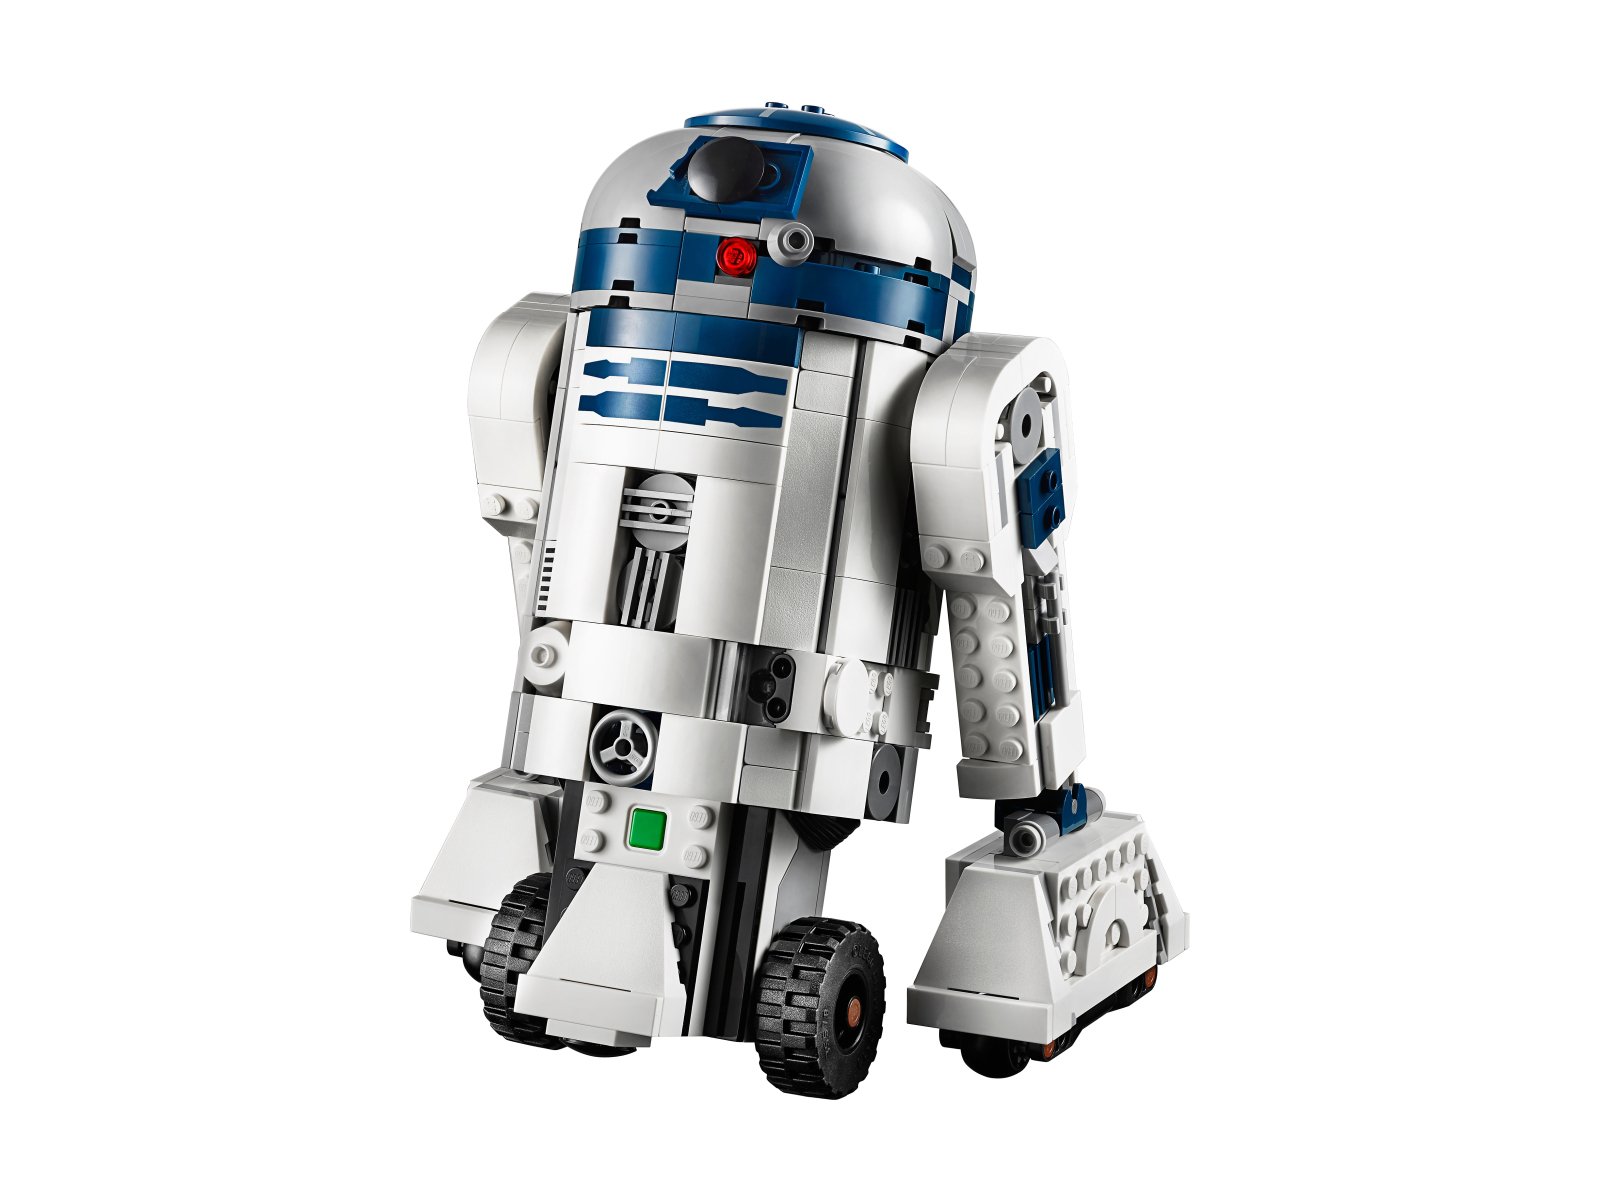 LEGO Star Wars Dowódca droidów 75253